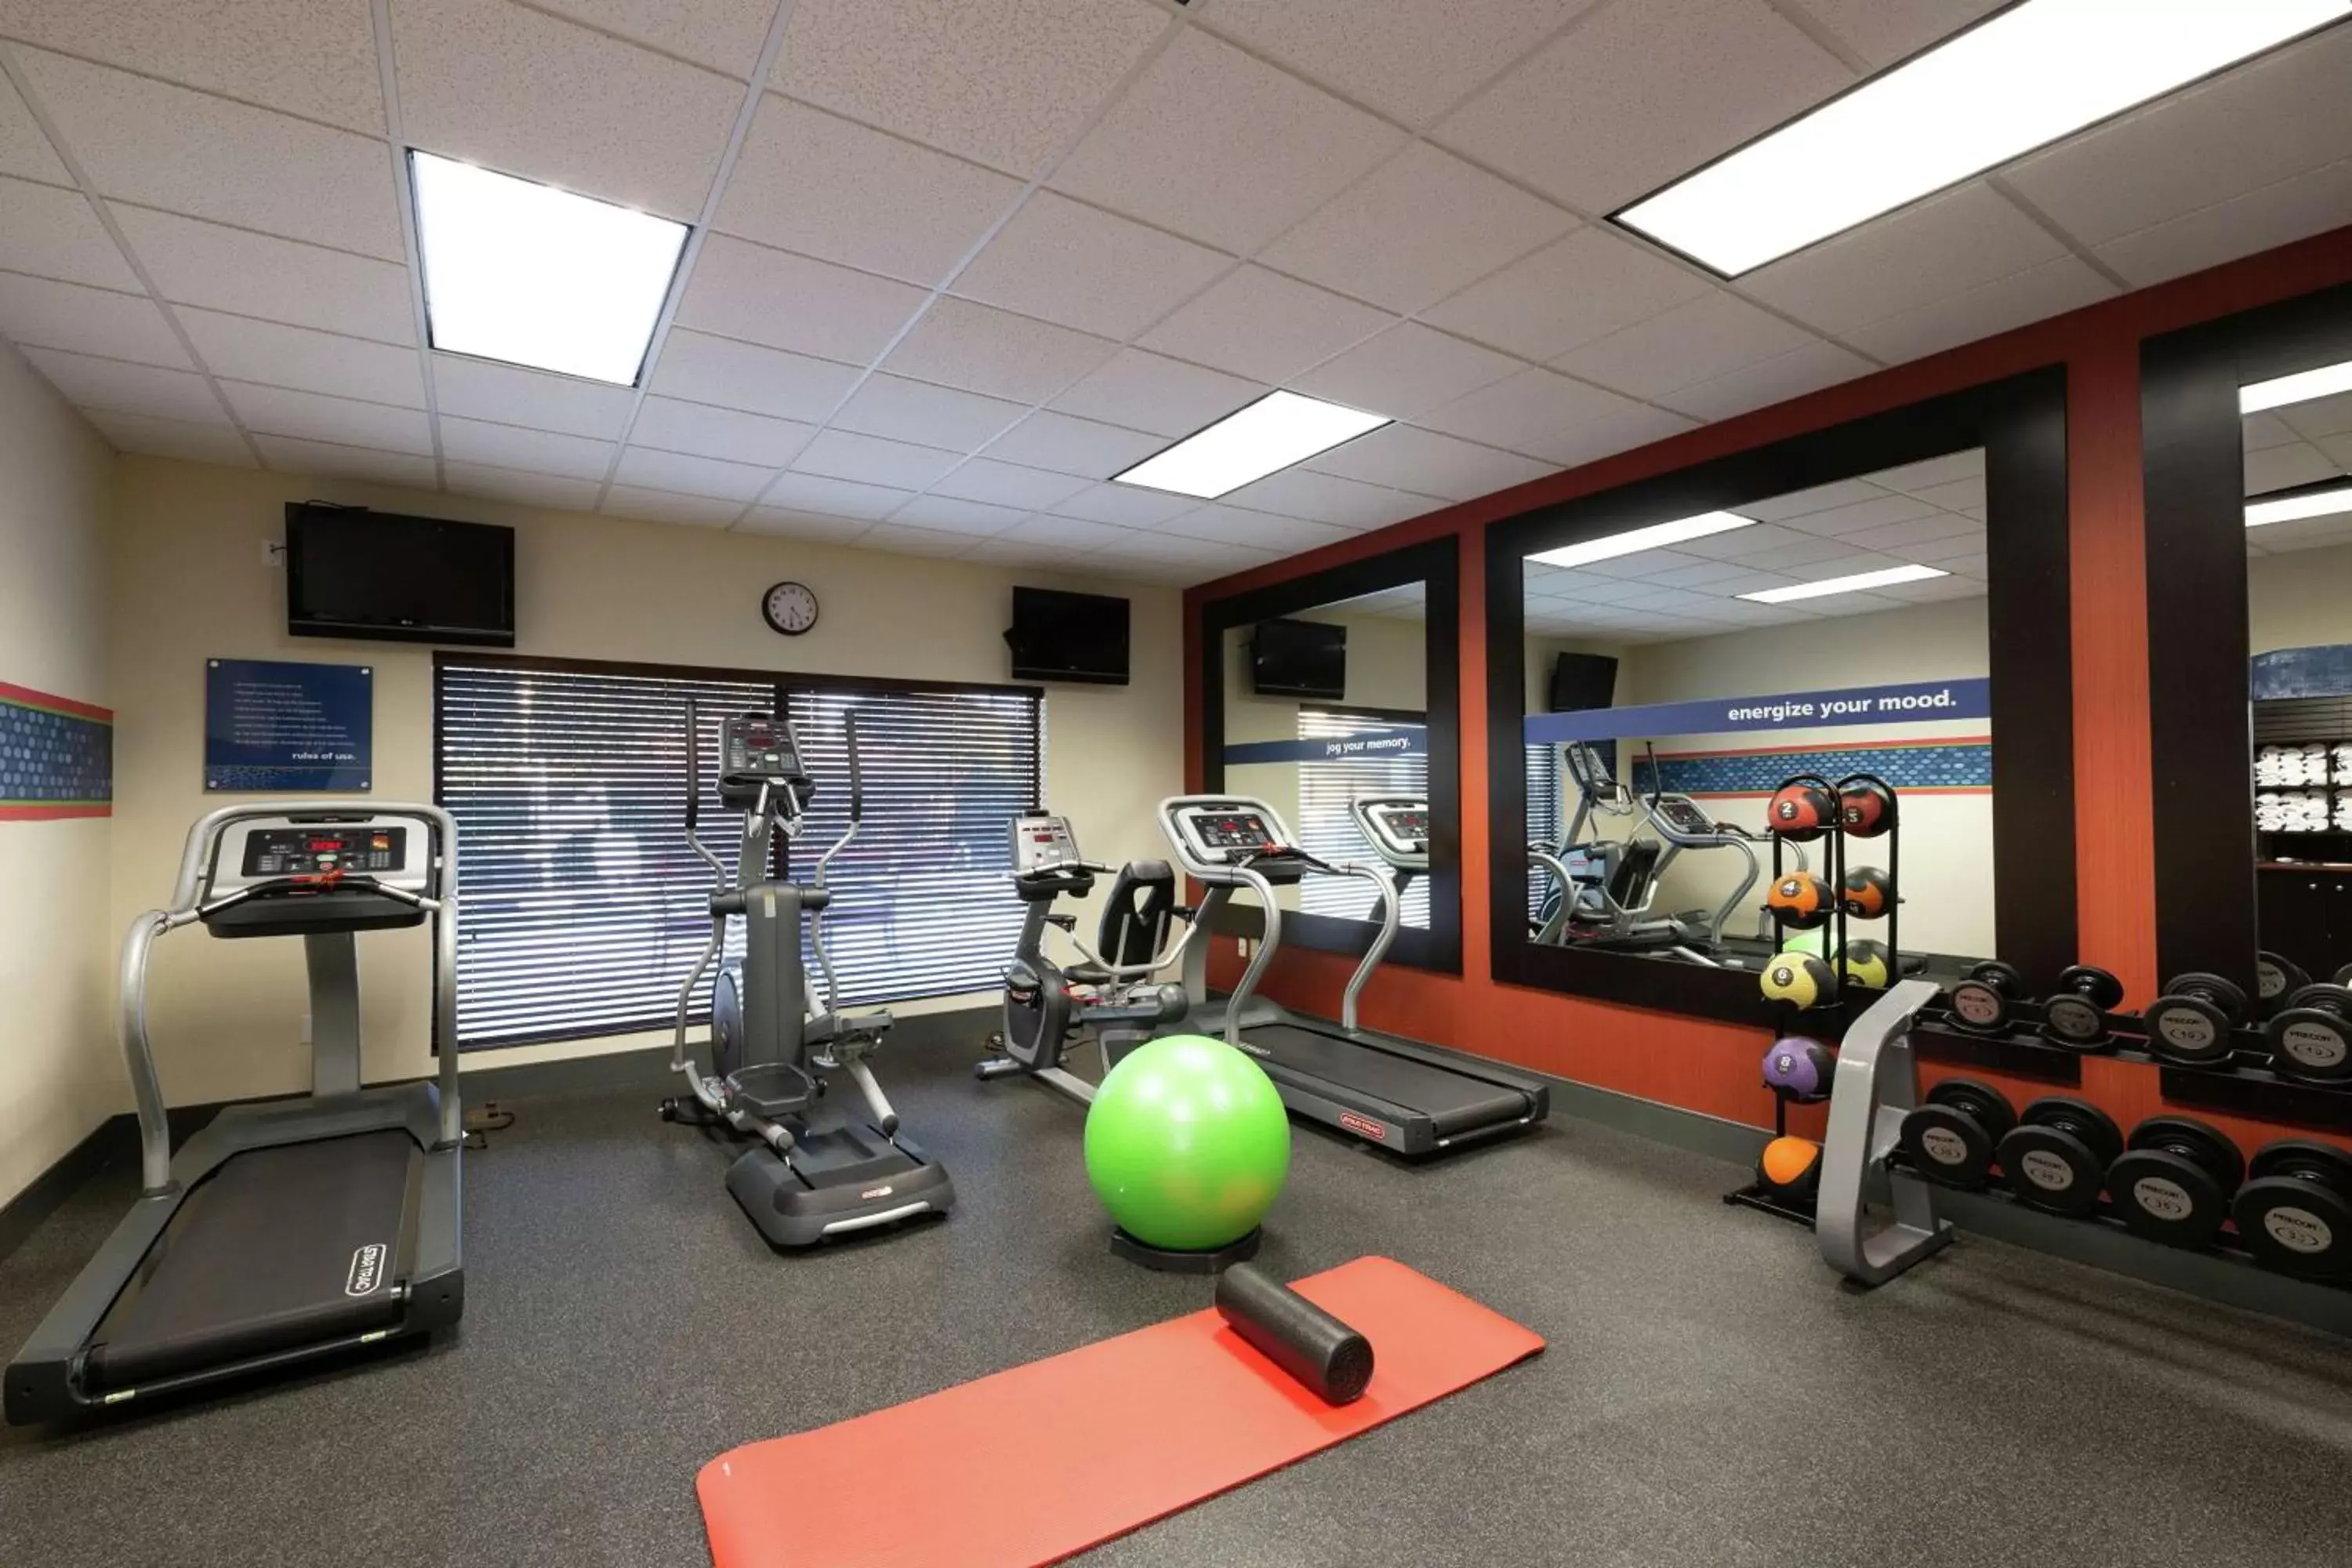 Fitness centre/facilities, Fitness Center/Facilities in Hampton Inn Winston-Salem Hanes Mall